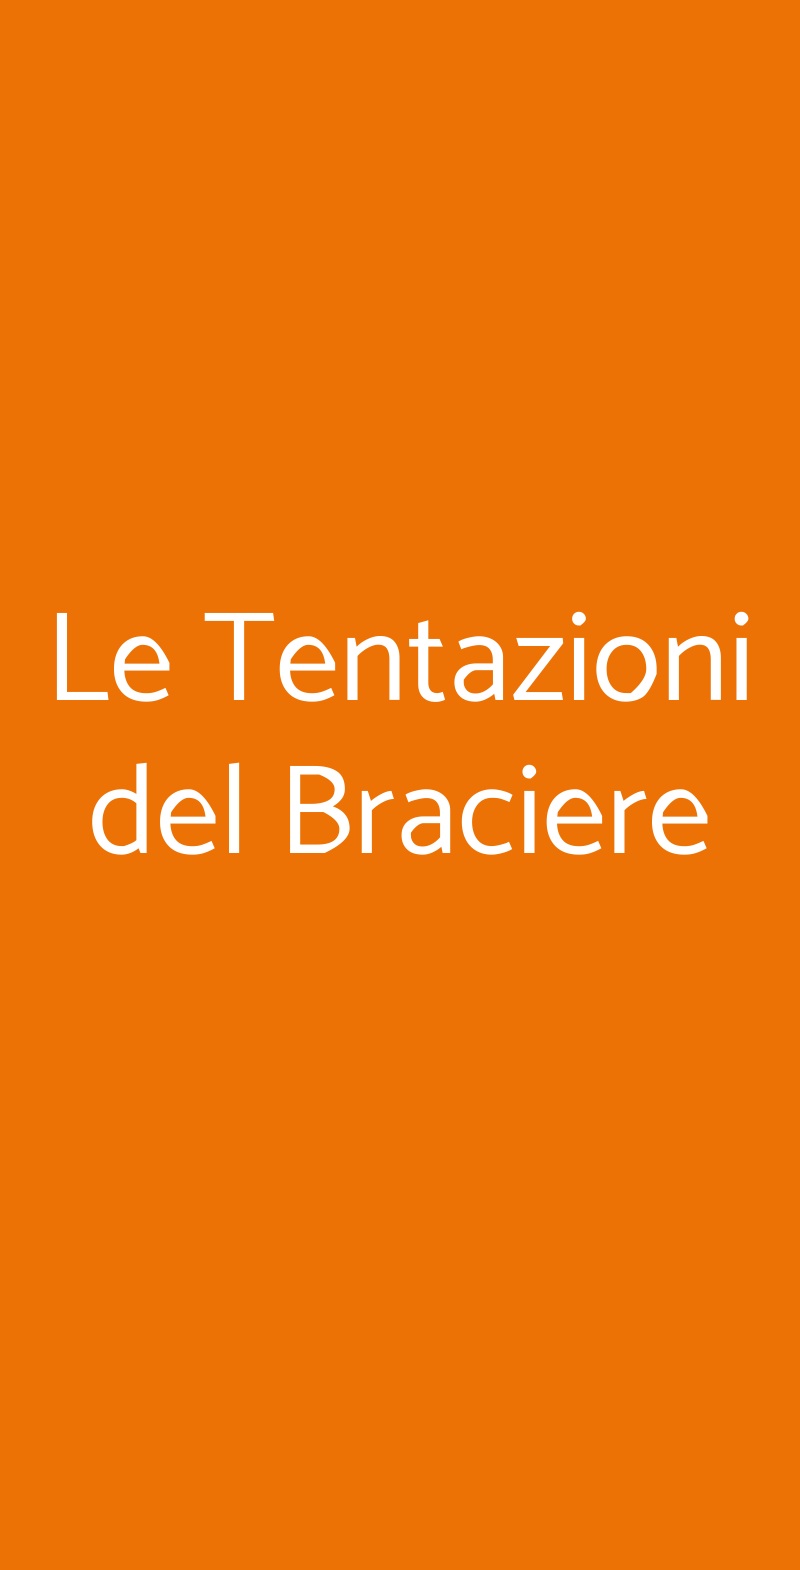 Le Tentazioni del Braciere Bergamo menù 1 pagina